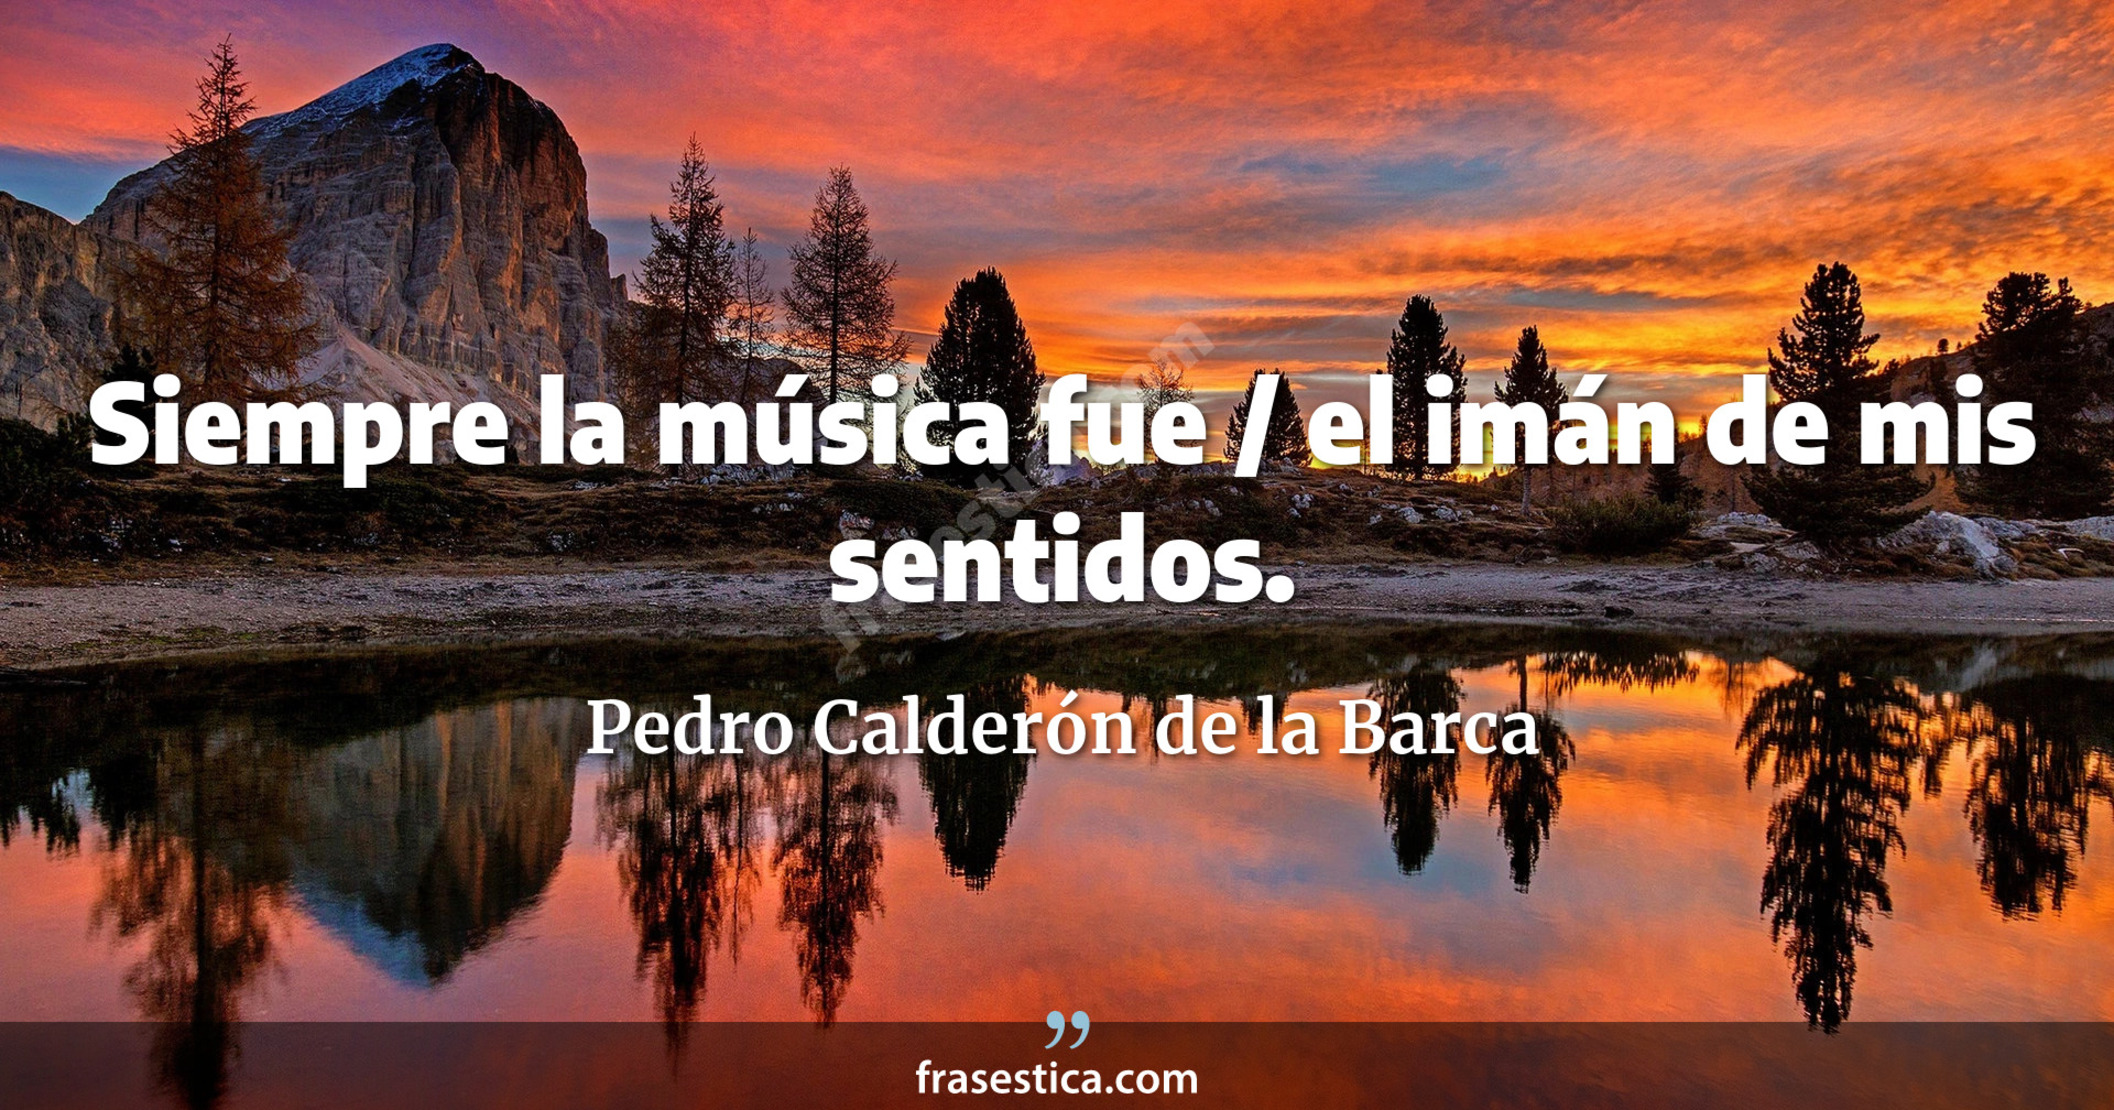 Siempre la música fue / el imán de mis sentidos. - Pedro Calderón de la Barca